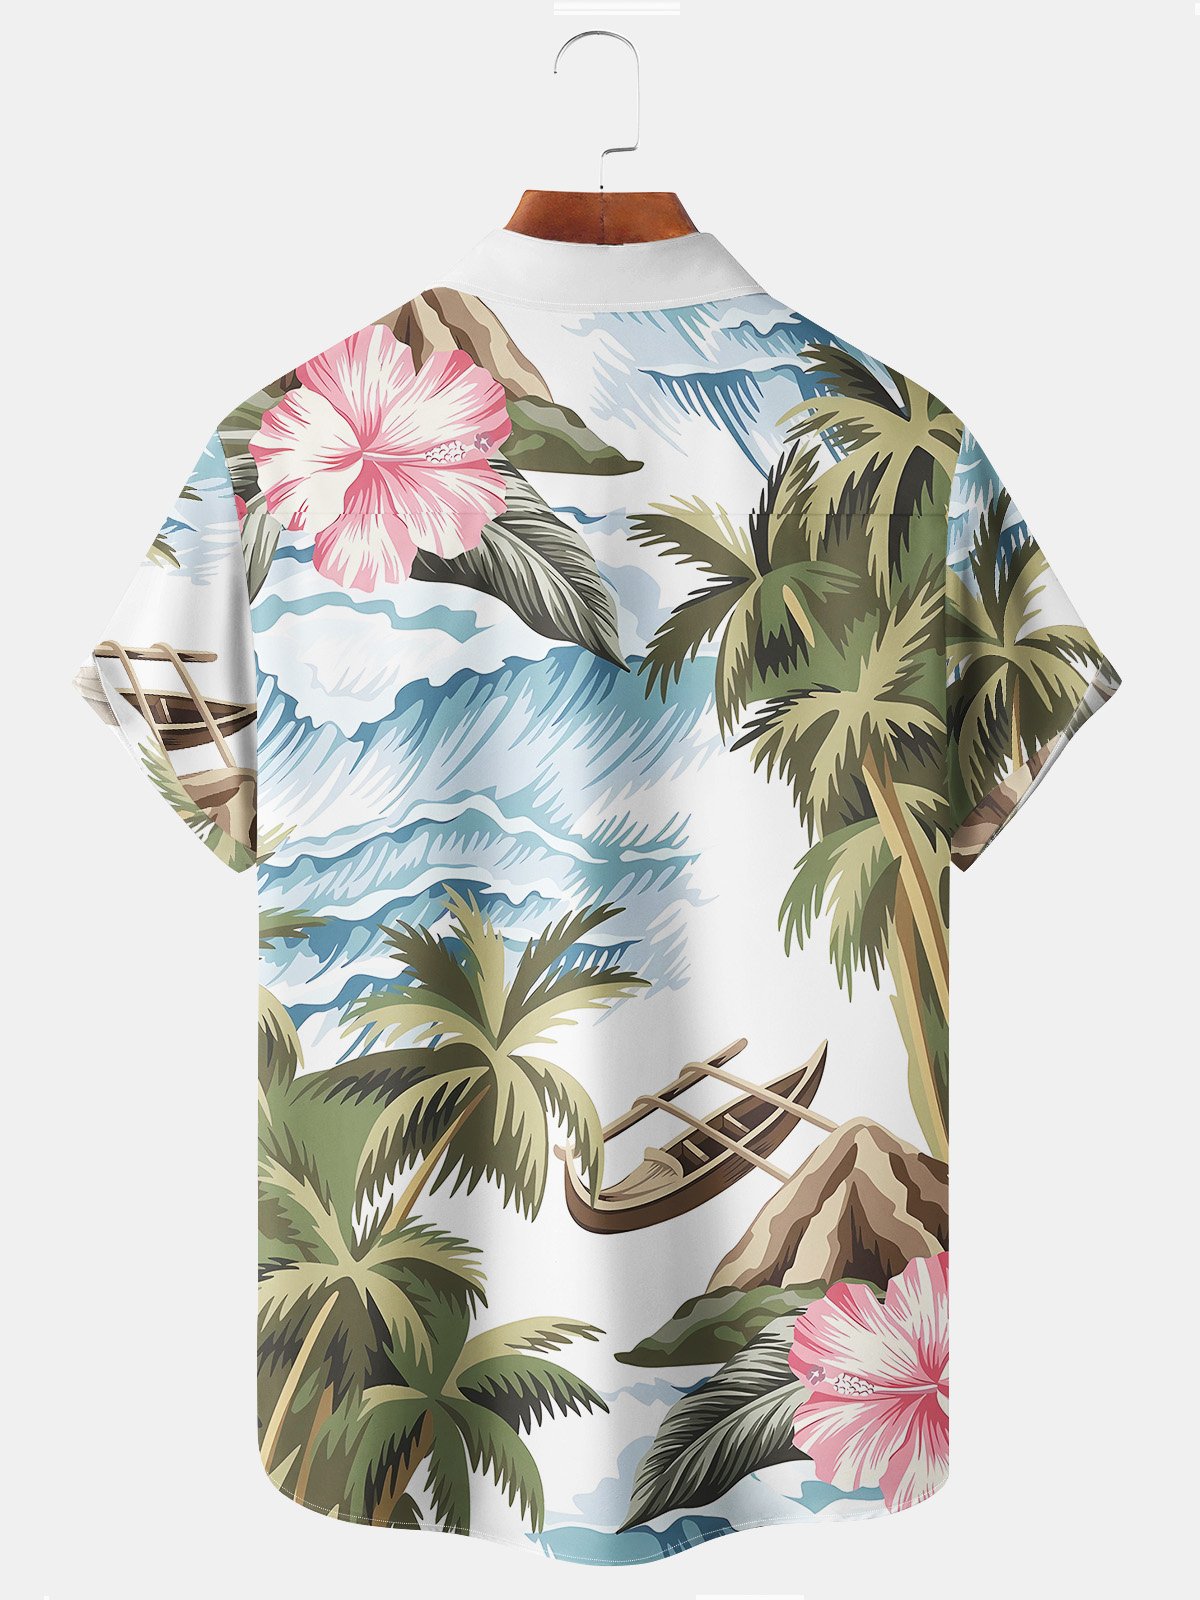 Royaura Beach Vacation Men's White Hawaiian Shirts Coconut Tree Art Stretch Plus Size Aloha Casual Camp Pocket Shirts